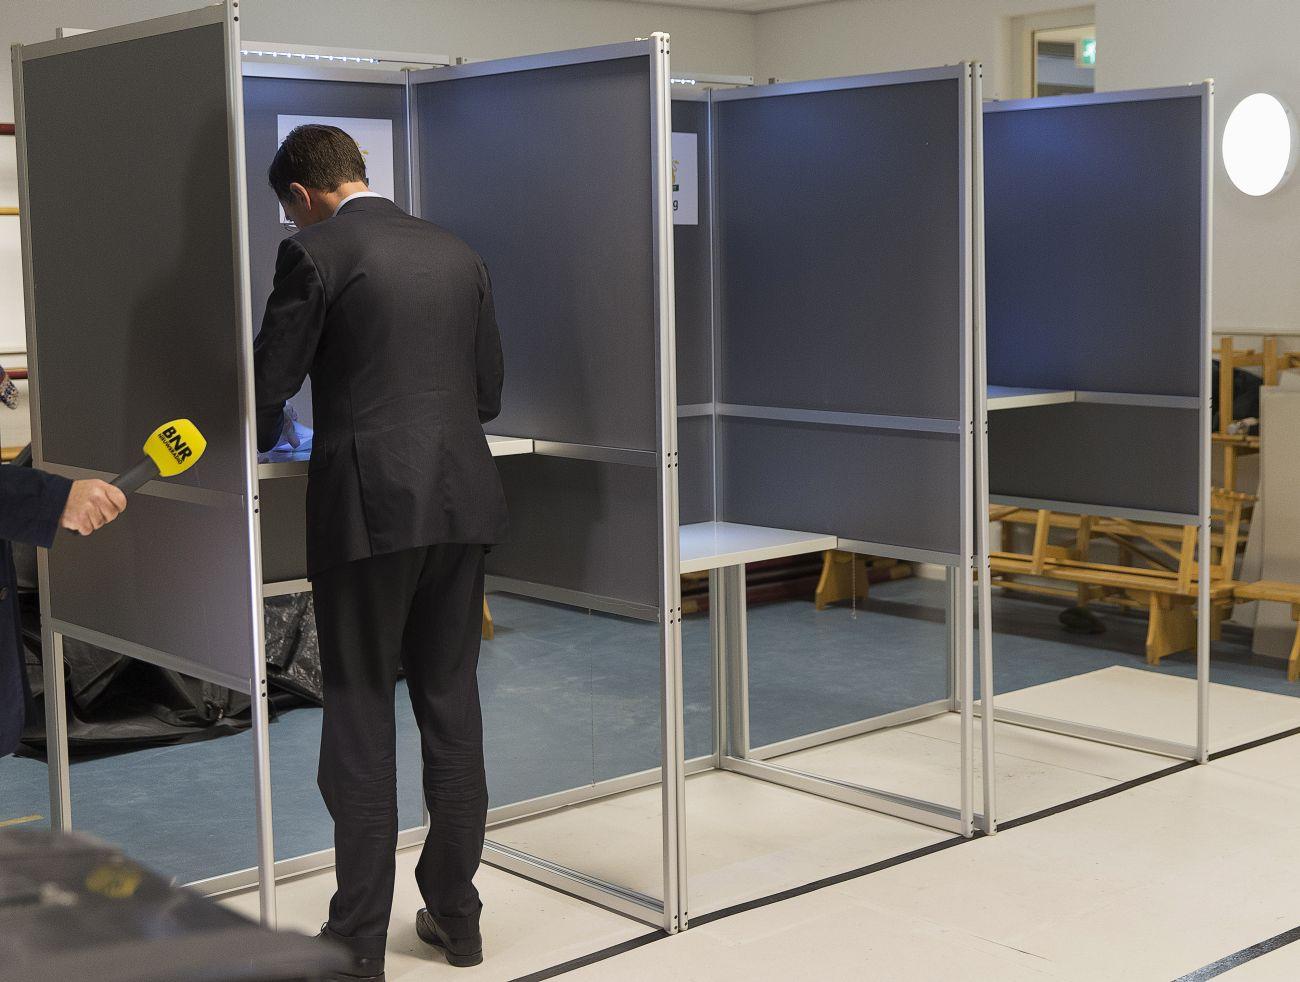 Mark Rutte miniszterelnök szavazott